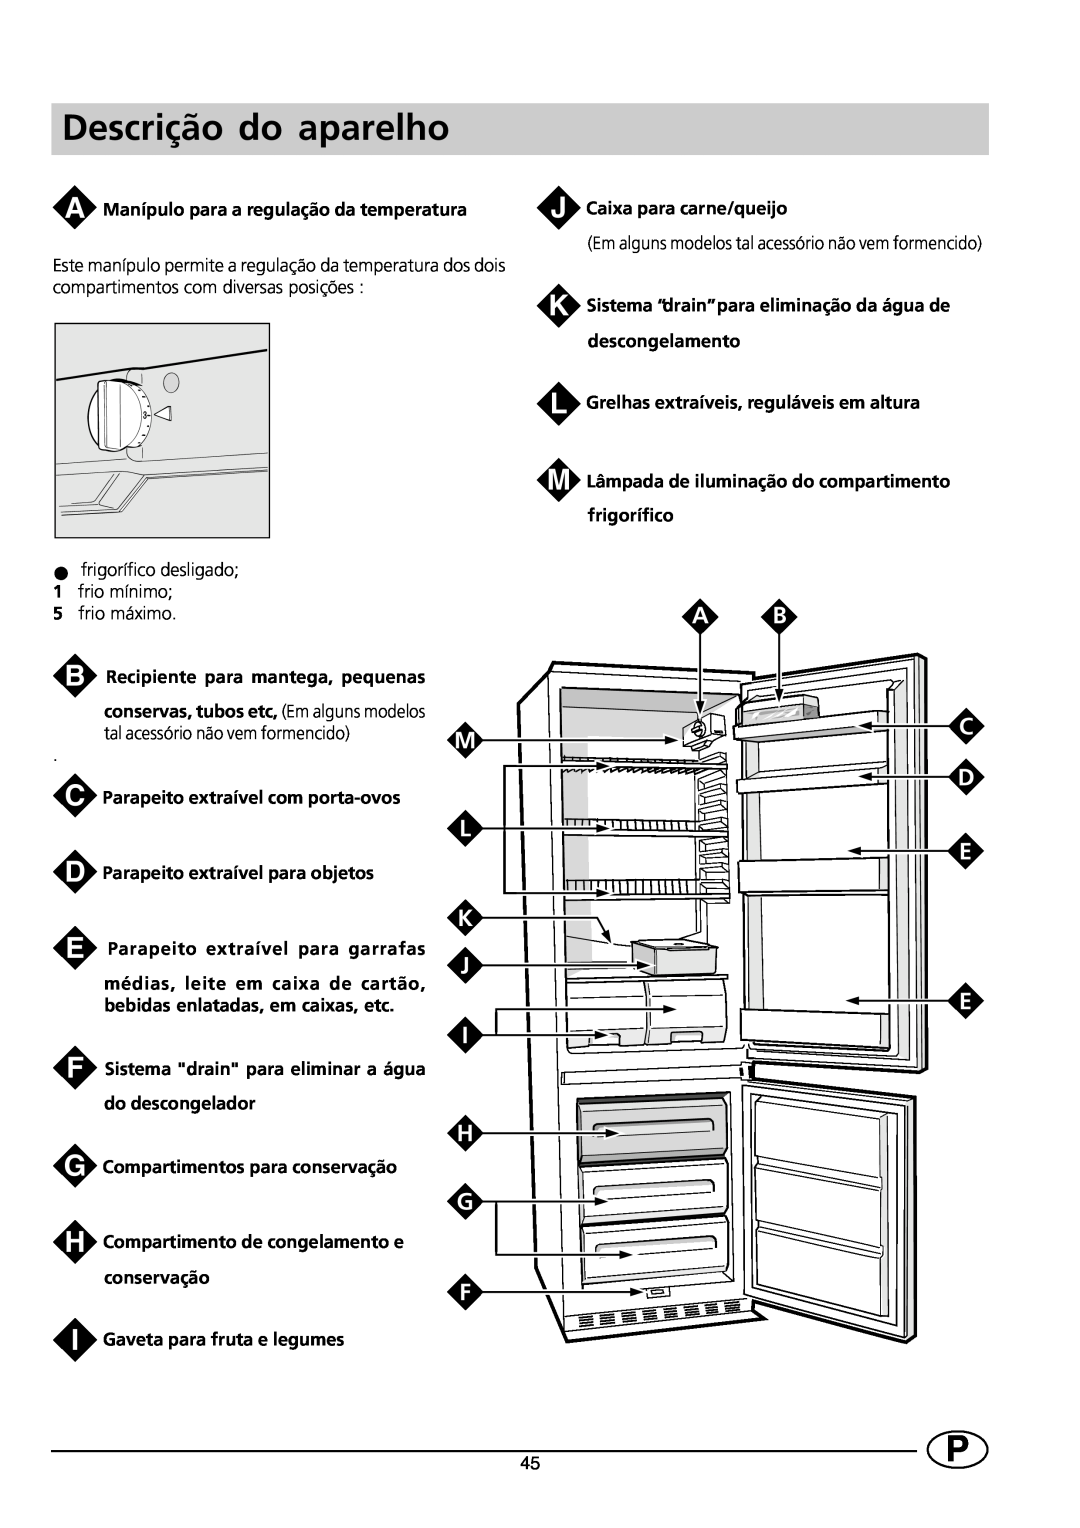 Indesit CG 3100 manual Descrição do aparelho, K L M, K J E I H G F 